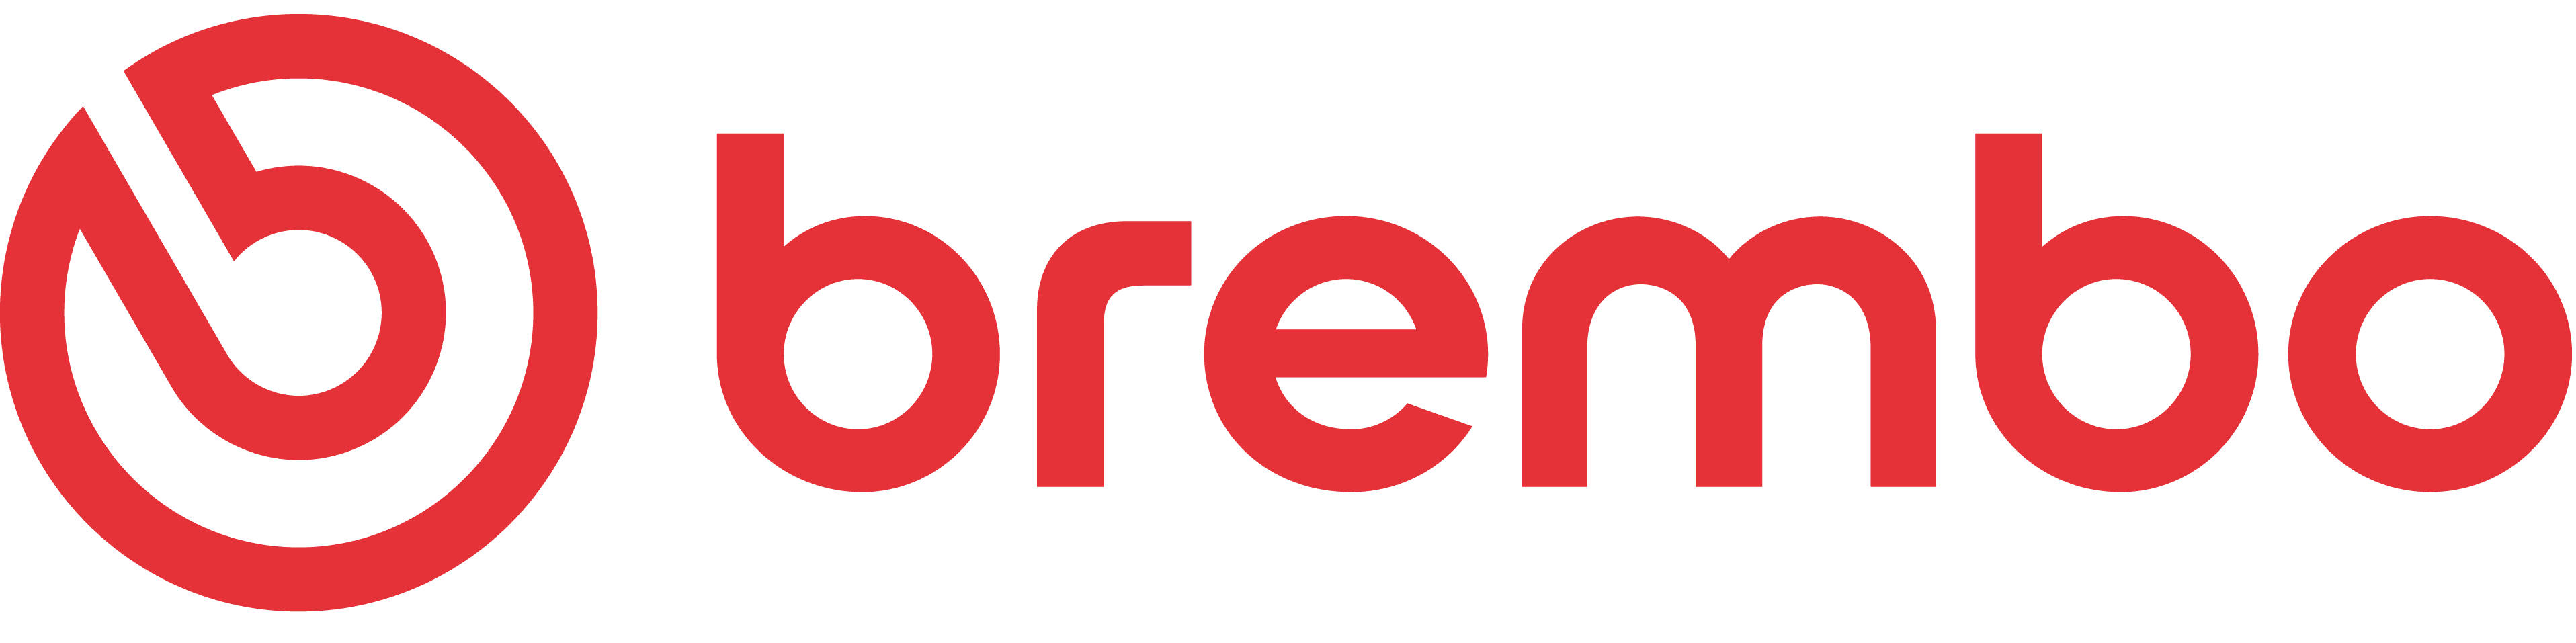 Brembo-logo-1